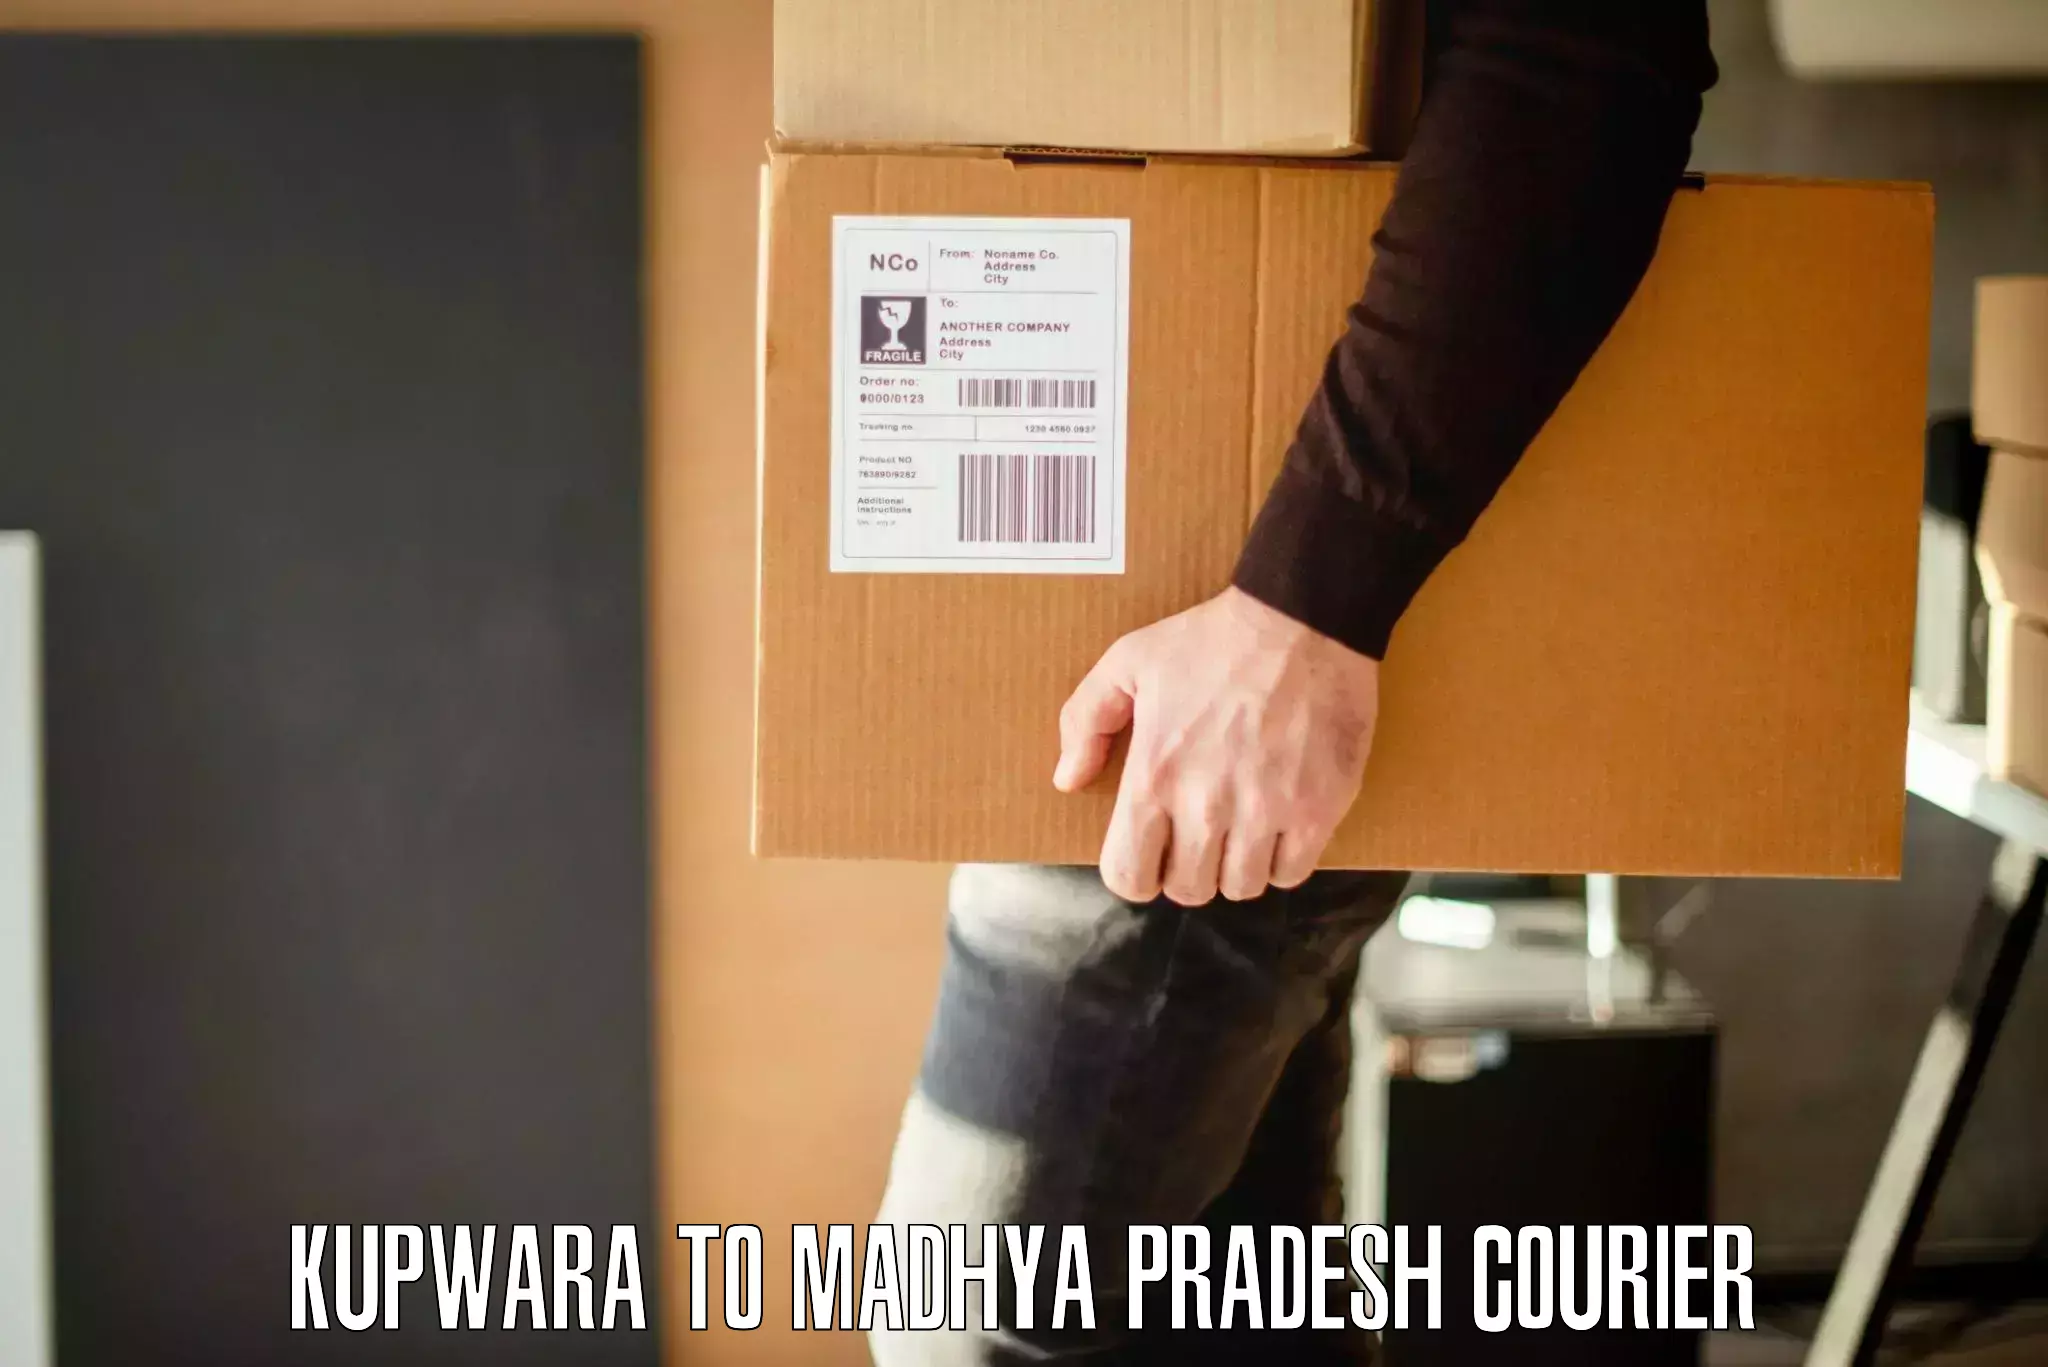 Personalized moving service Kupwara to Ujjain